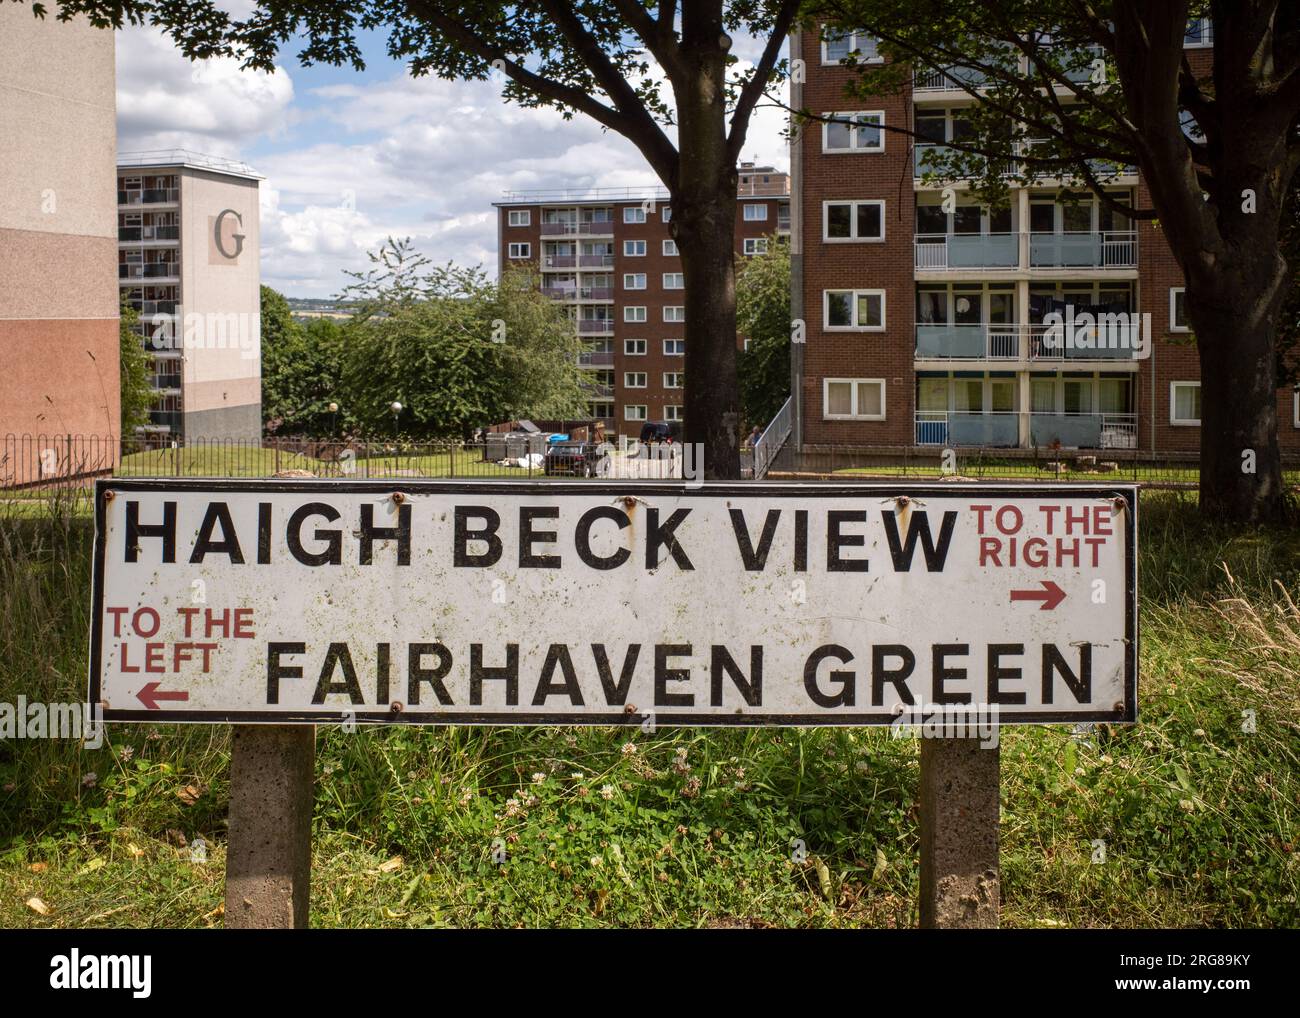 Panneau de rue à Thorpe Edge regardant vers le bas vers des blocs de tour dans la banlieue de Bradford, Angleterre, Royaume-Uni. Logement, rue, architecture des années 1950. ROYAUME-UNI Banque D'Images